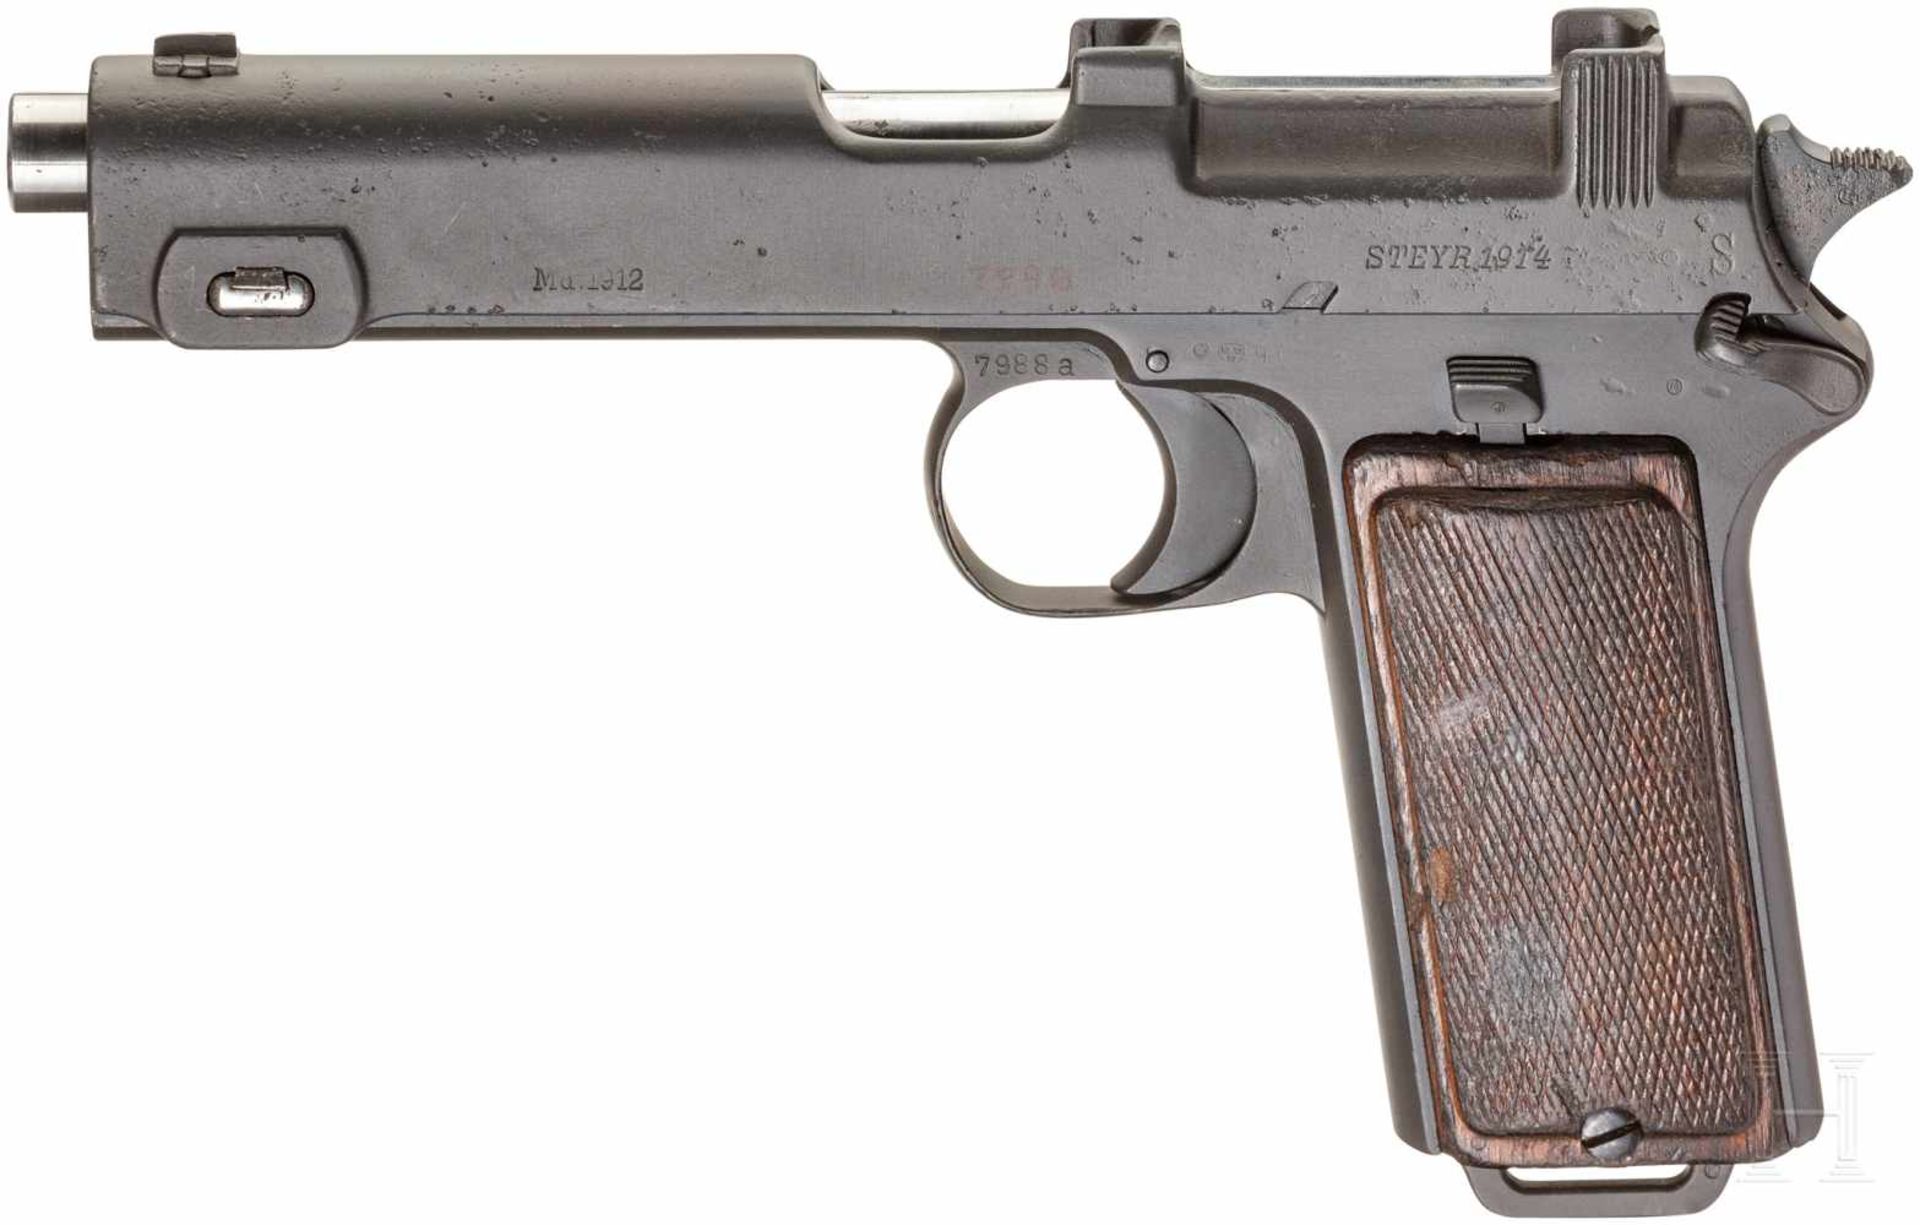 Steyr Mod. 1912Kal. 9 mm Steyr, Nr. 7988a, Nicht nummerngleich. Blanker Lauf. Achtschüssig. Dt.